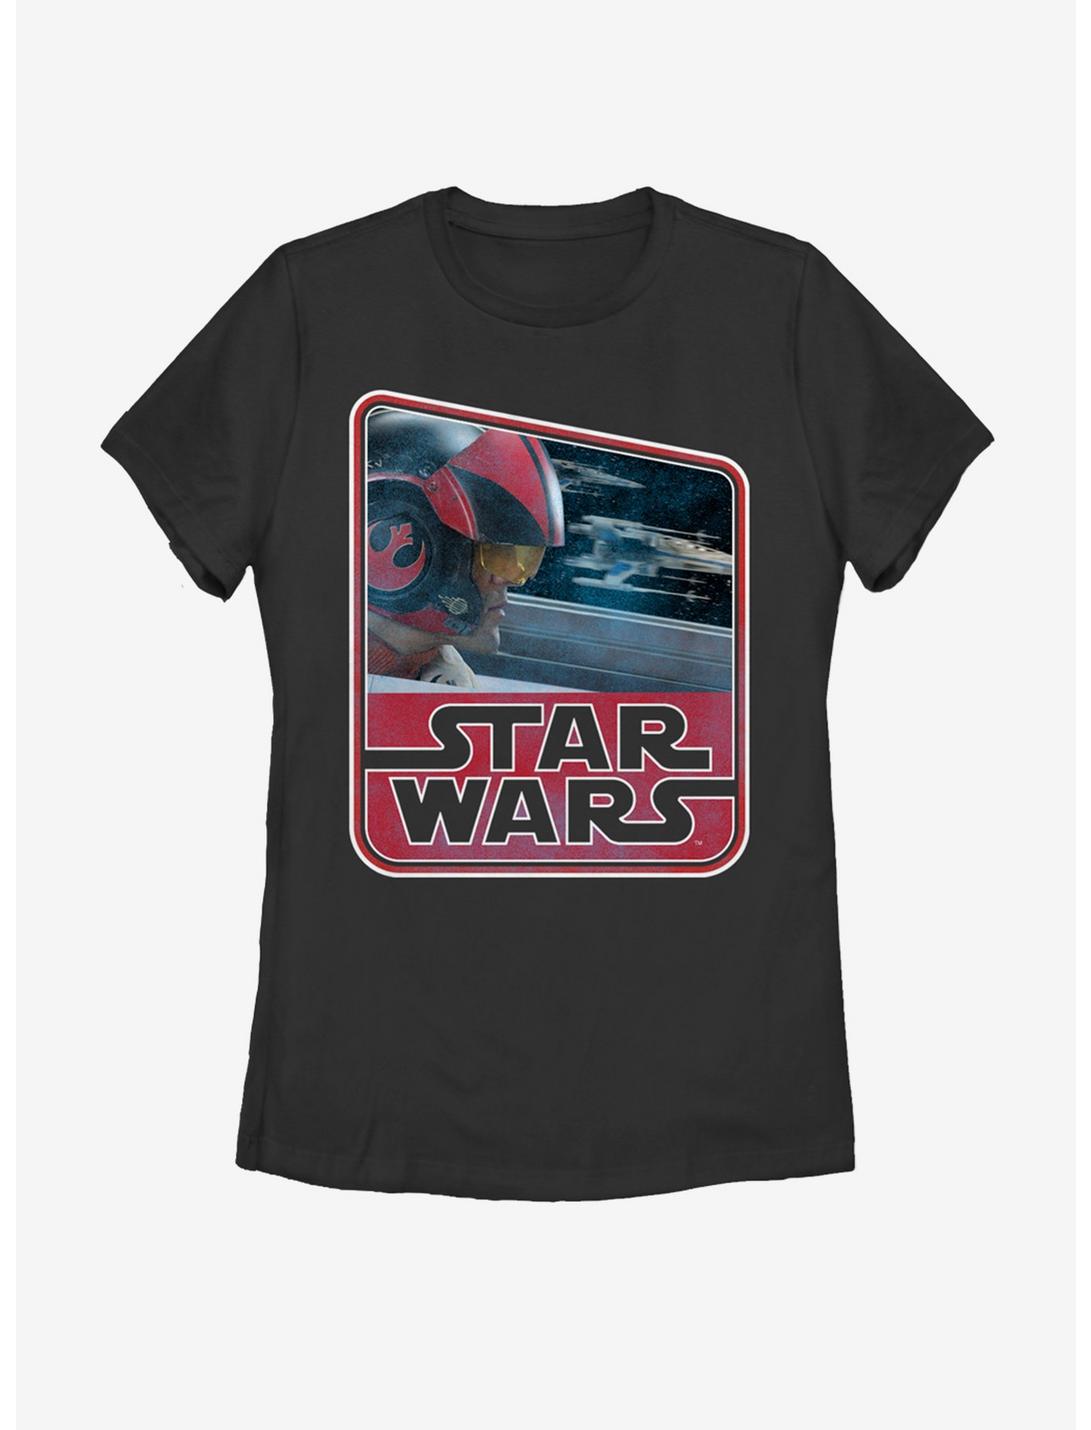 Star Wars Retro Poe Dameron Womens T-Shirt, BLACK, hi-res